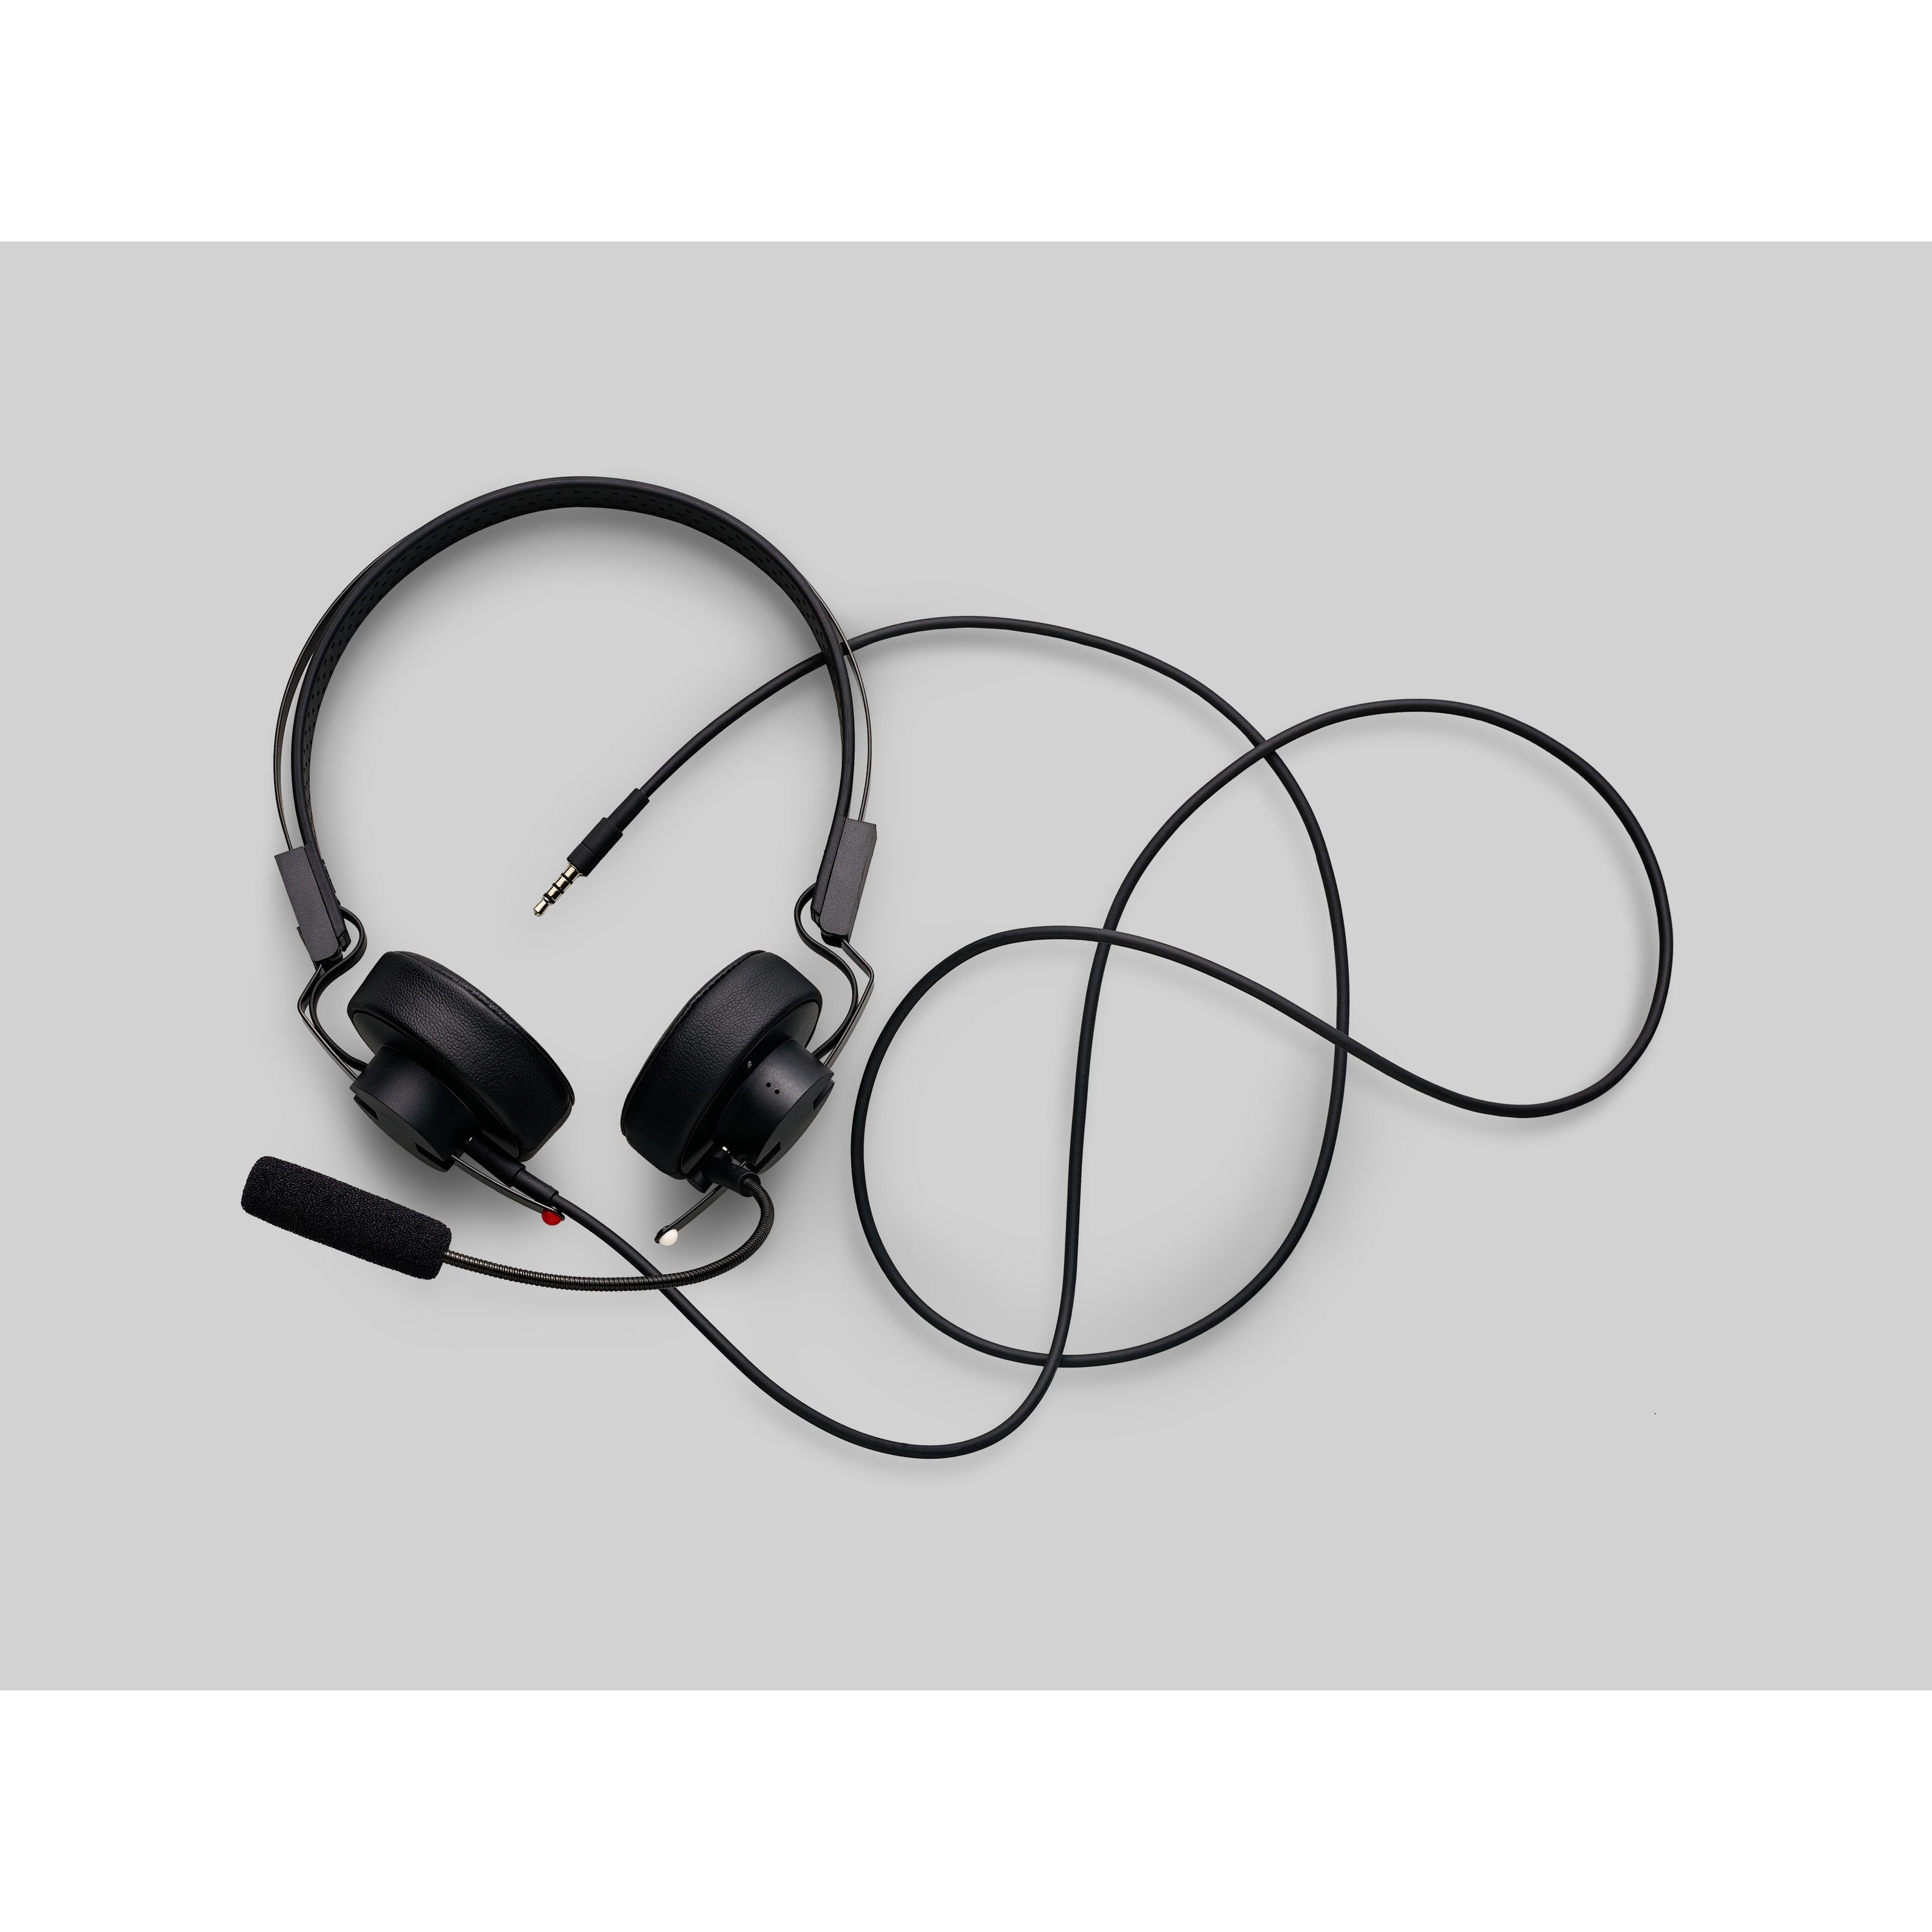 Kopfhörer - Mikrofon) On-Ear-Kopfhörer Teenage mit Engineering Headphone (M-1